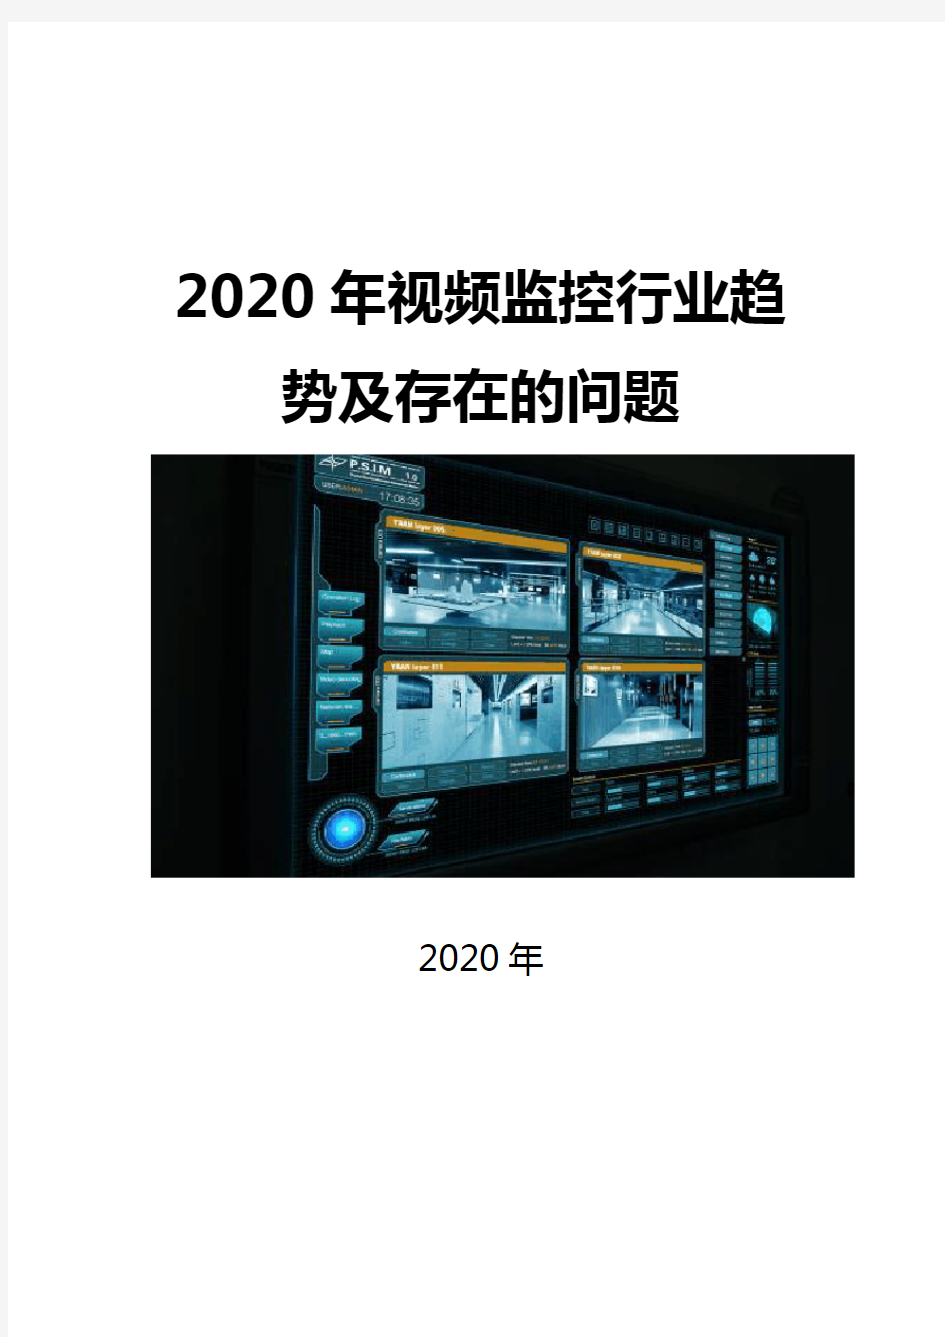 2020视频监控行业趋势及存在的问题